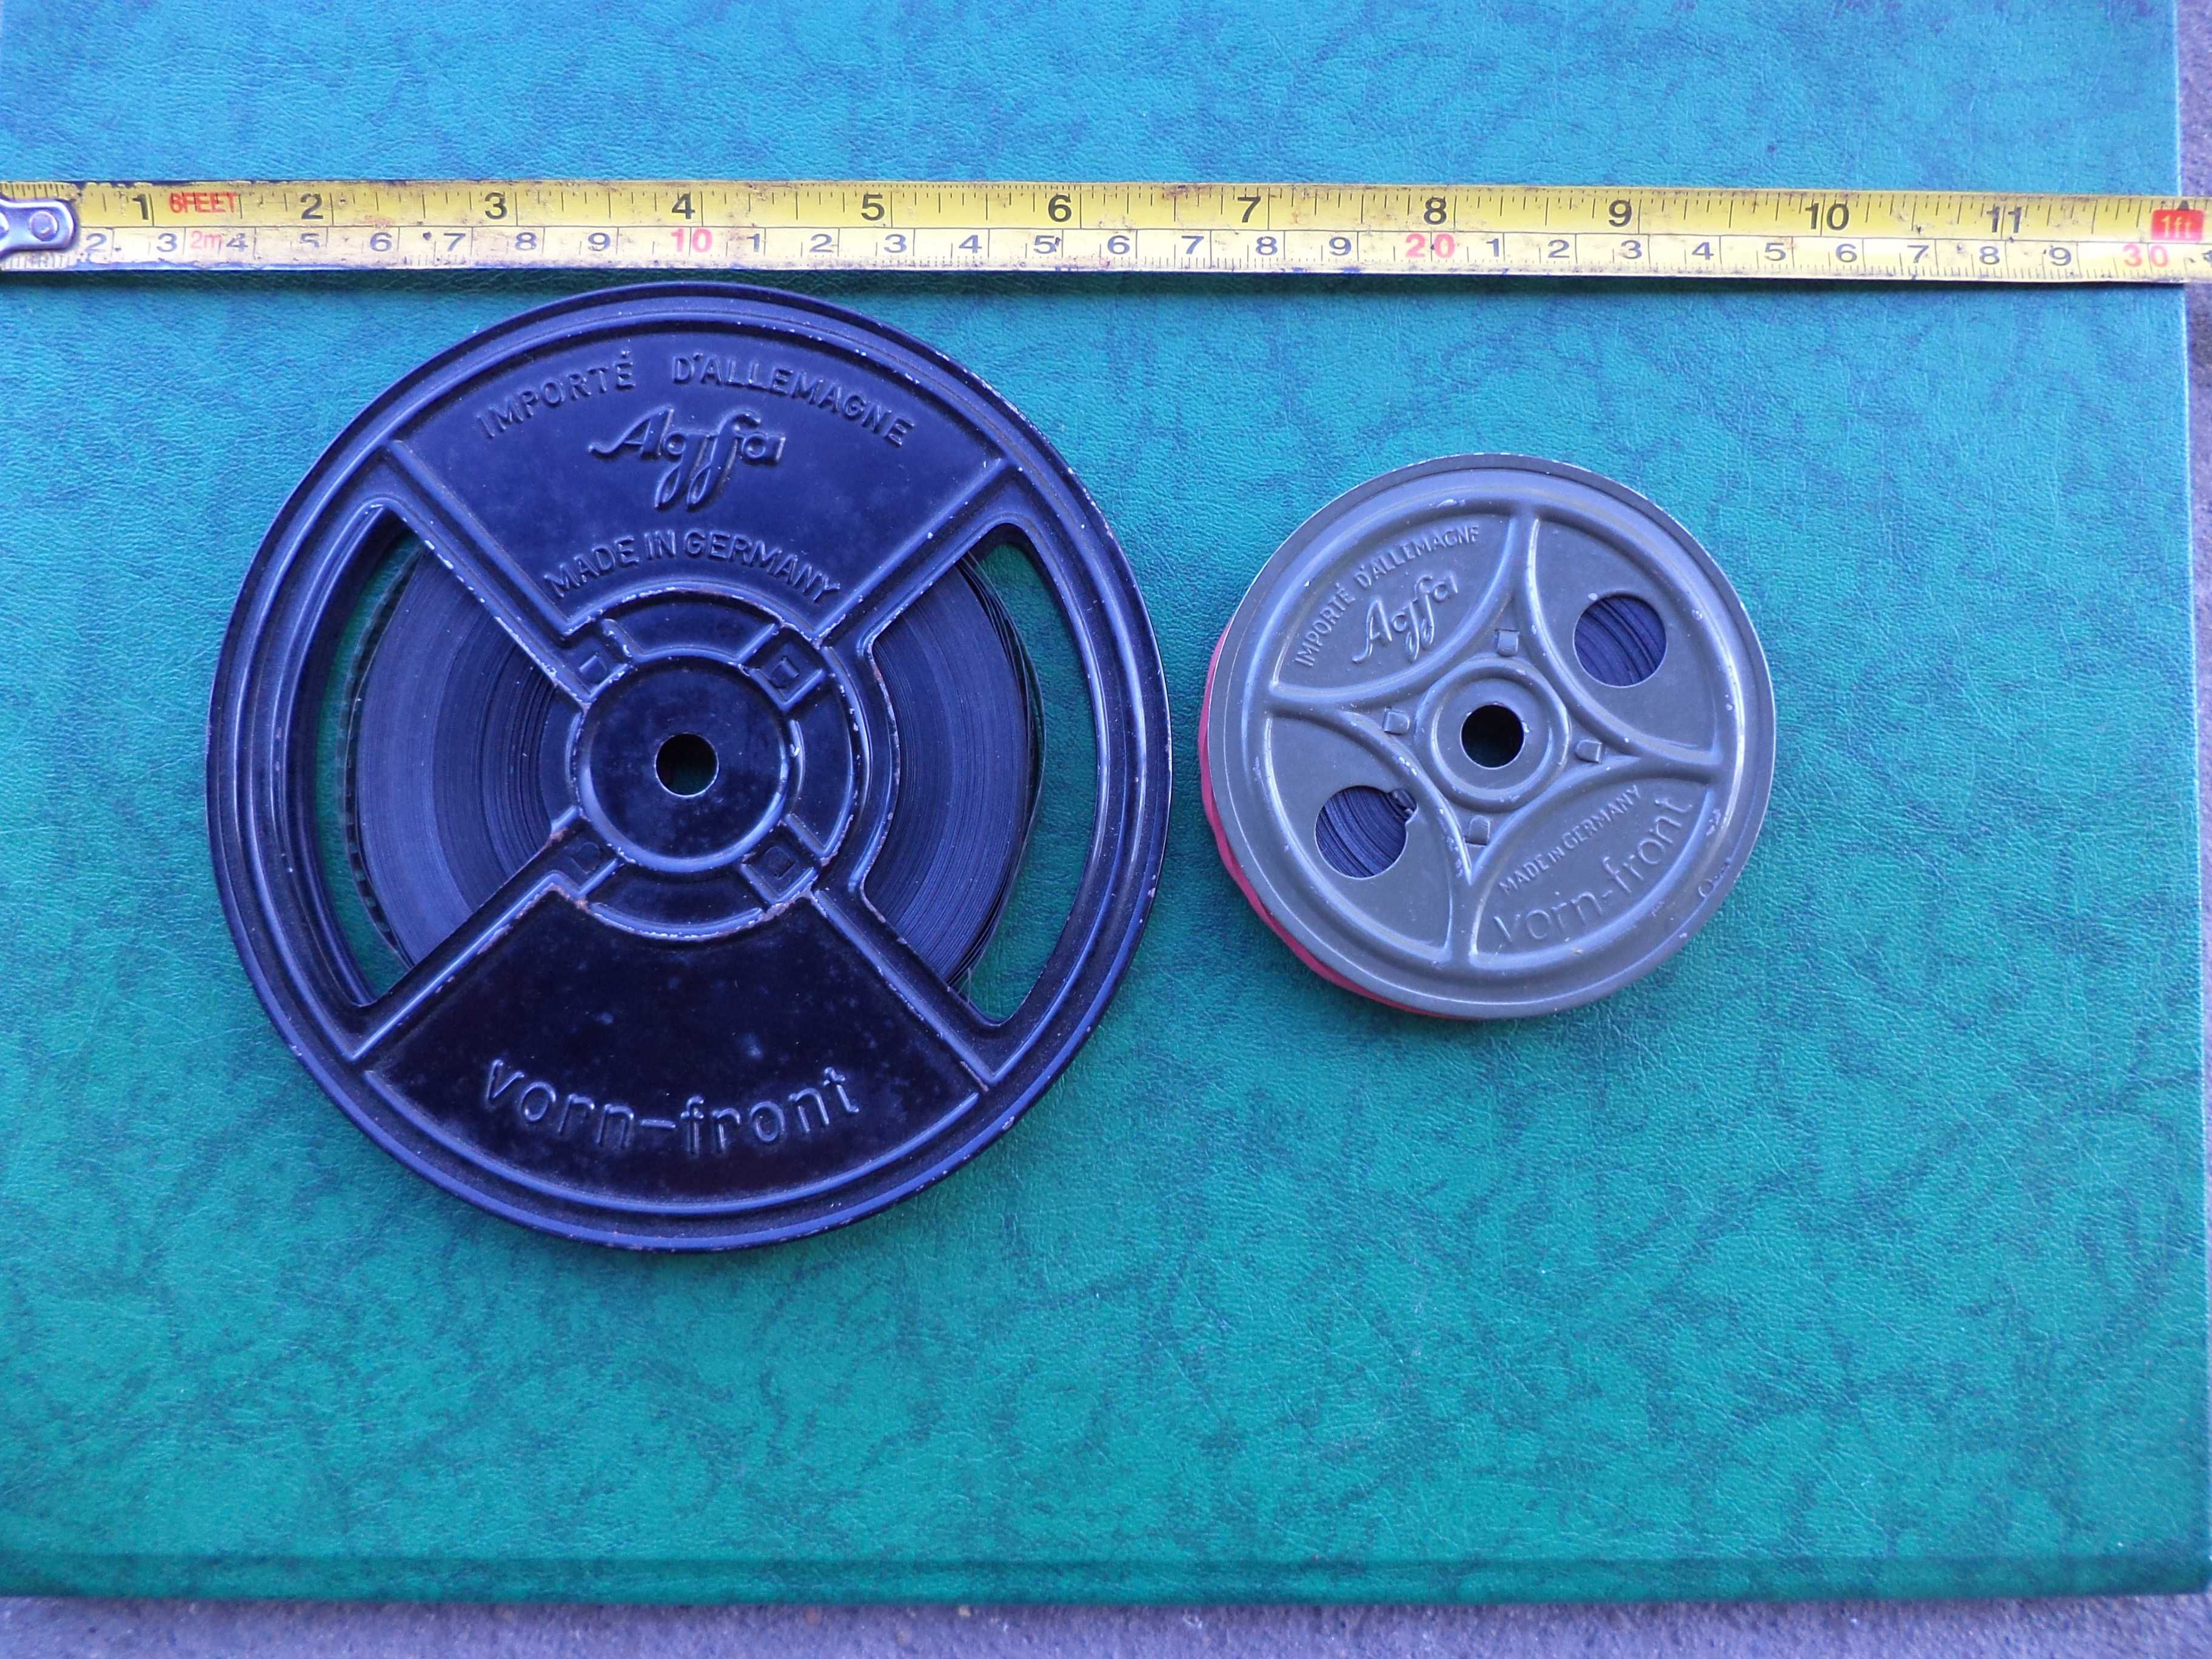 Role metal filme alb - negru vechi 8 mm Agfa vorn - front